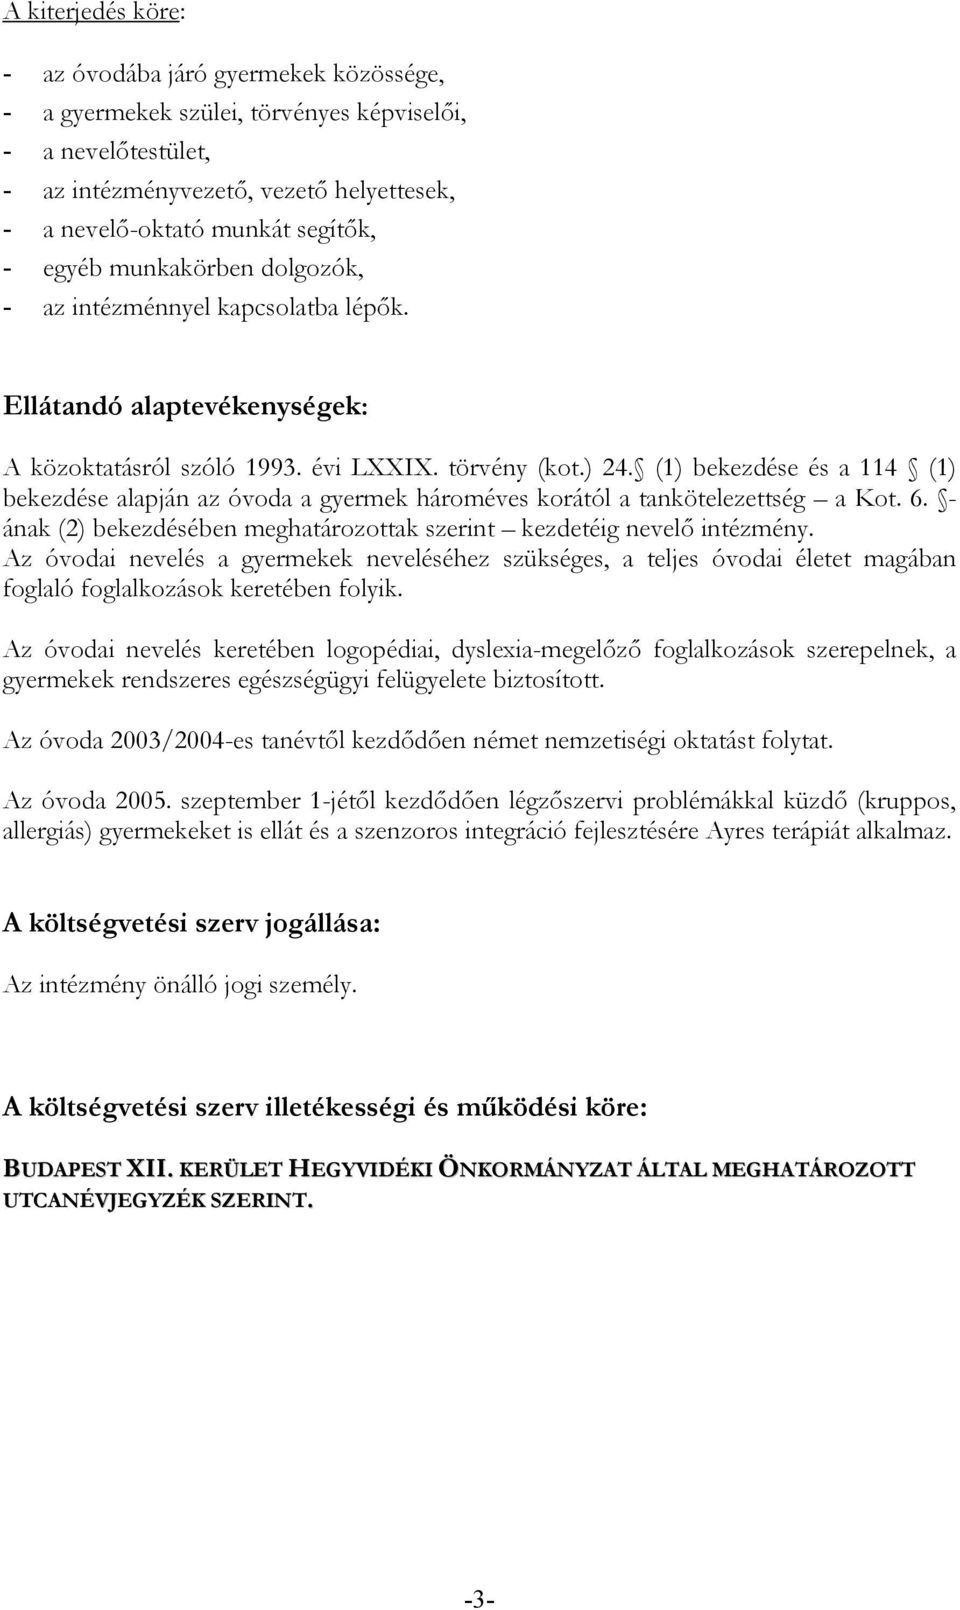 (1) bekezdése és a 114 (1) bekezdése alapján az óvoda a gyermek hároméves korától a tankötelezettség a Kot. 6. - ának (2) bekezdésében meghatározottak szerint kezdetéig nevelı intézmény.